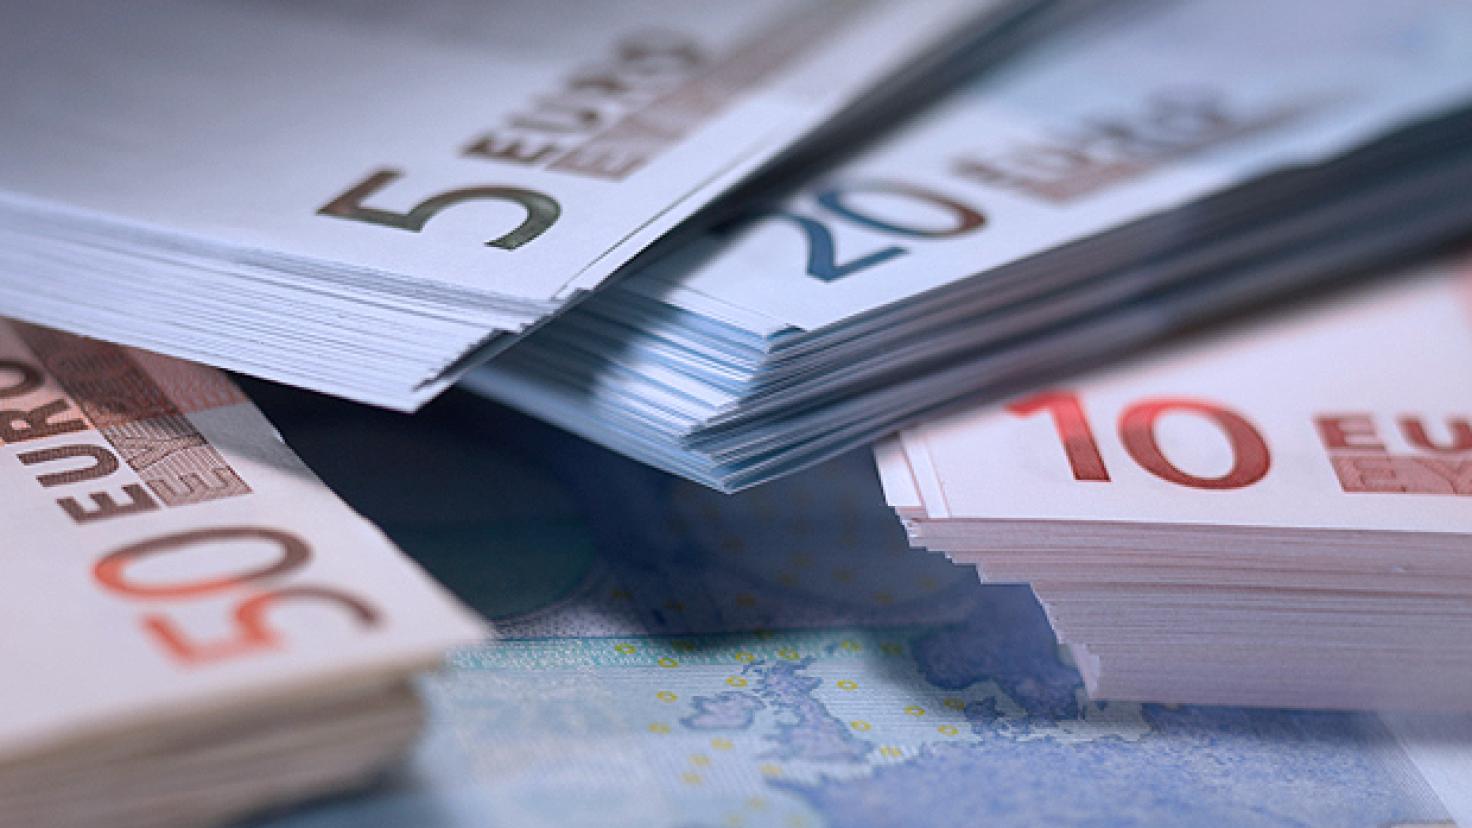 Valuta in euro: Pile di banconote da 5, 10, 20 e 50 euro accatastate [nid:30050].